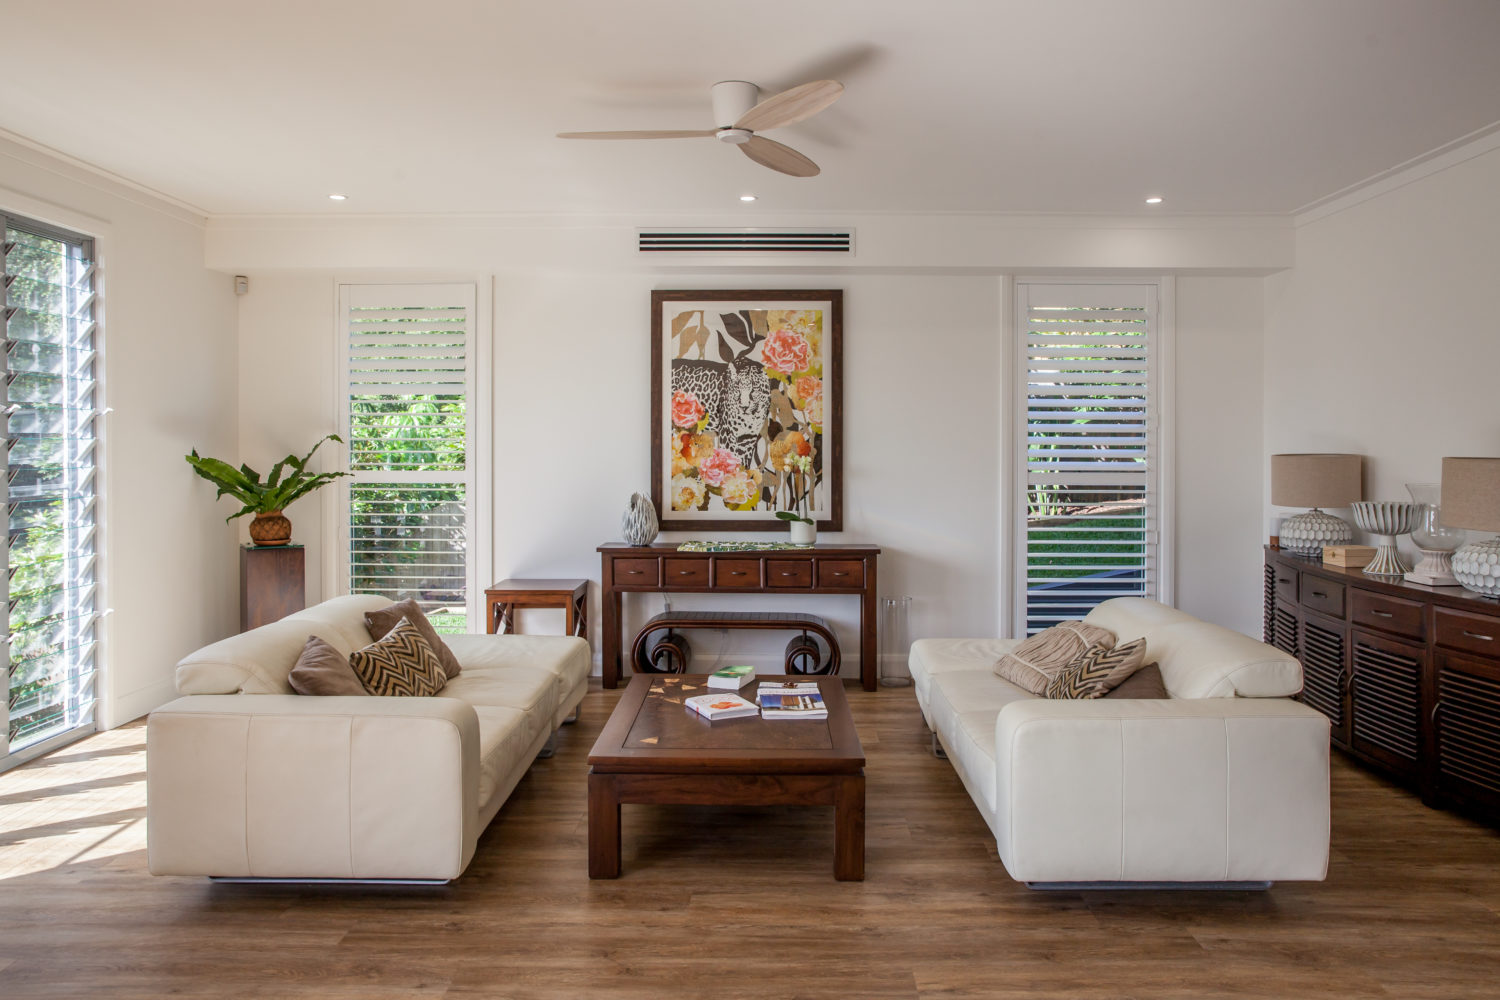 Luxury Home Design Queensland